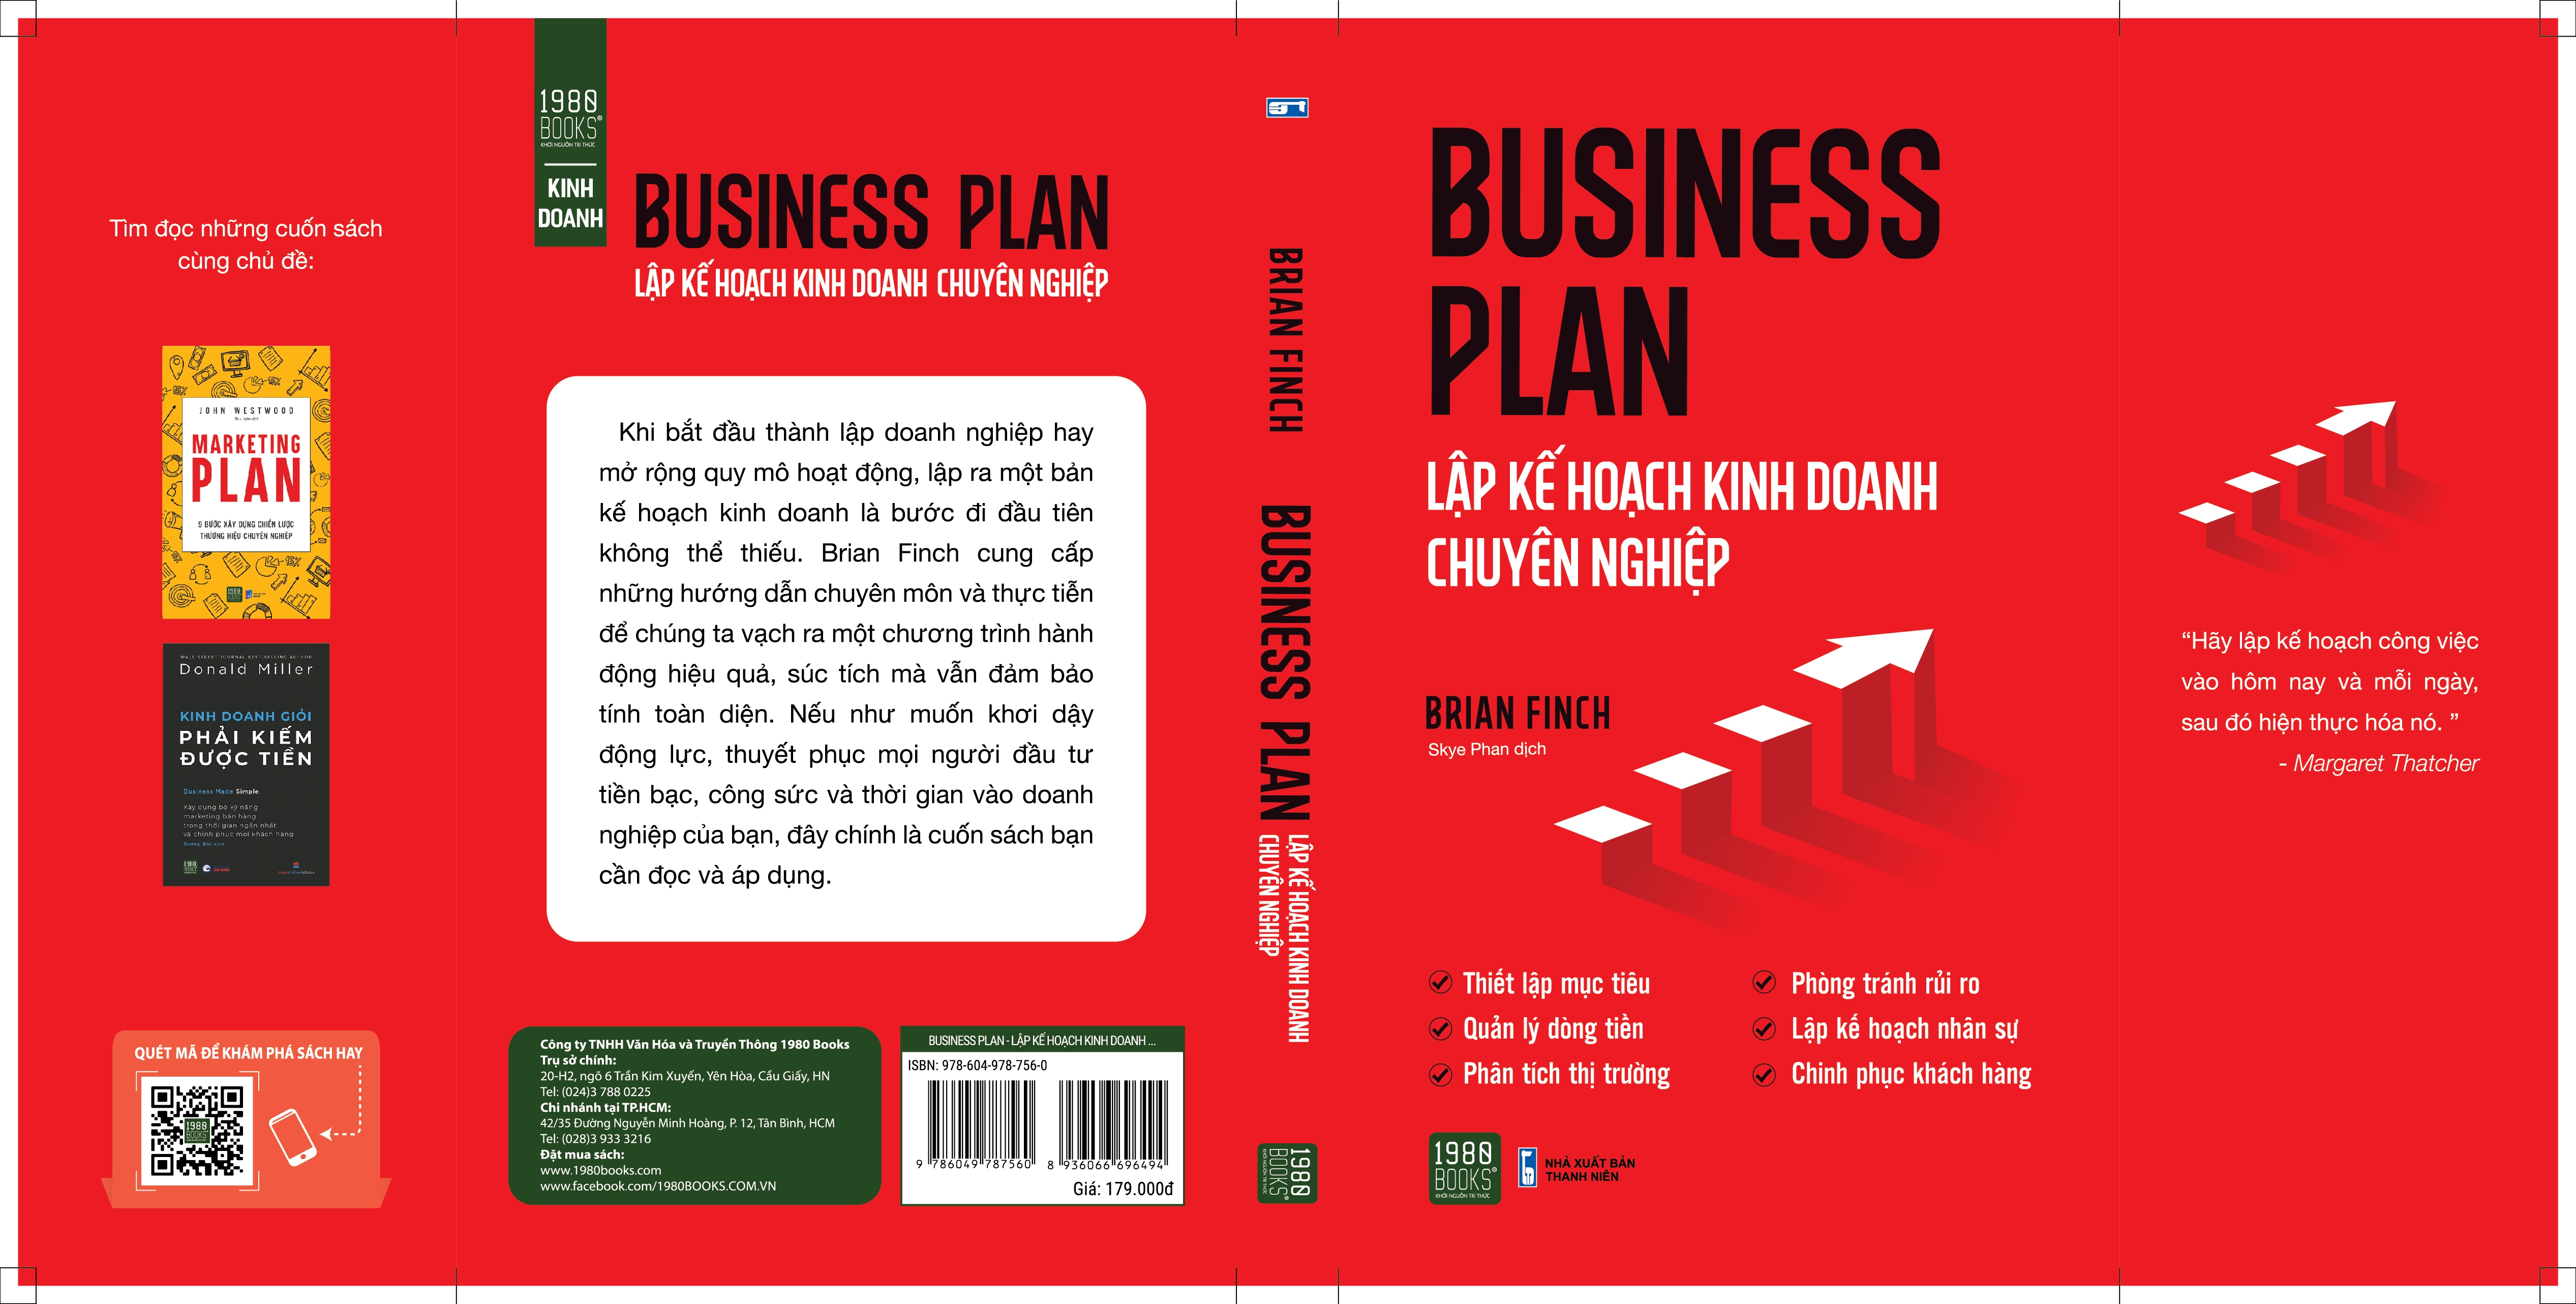 Hình ảnh Business Plan – Lập Kế Hoạch Kinh Doanh Chuyên Nghiệp